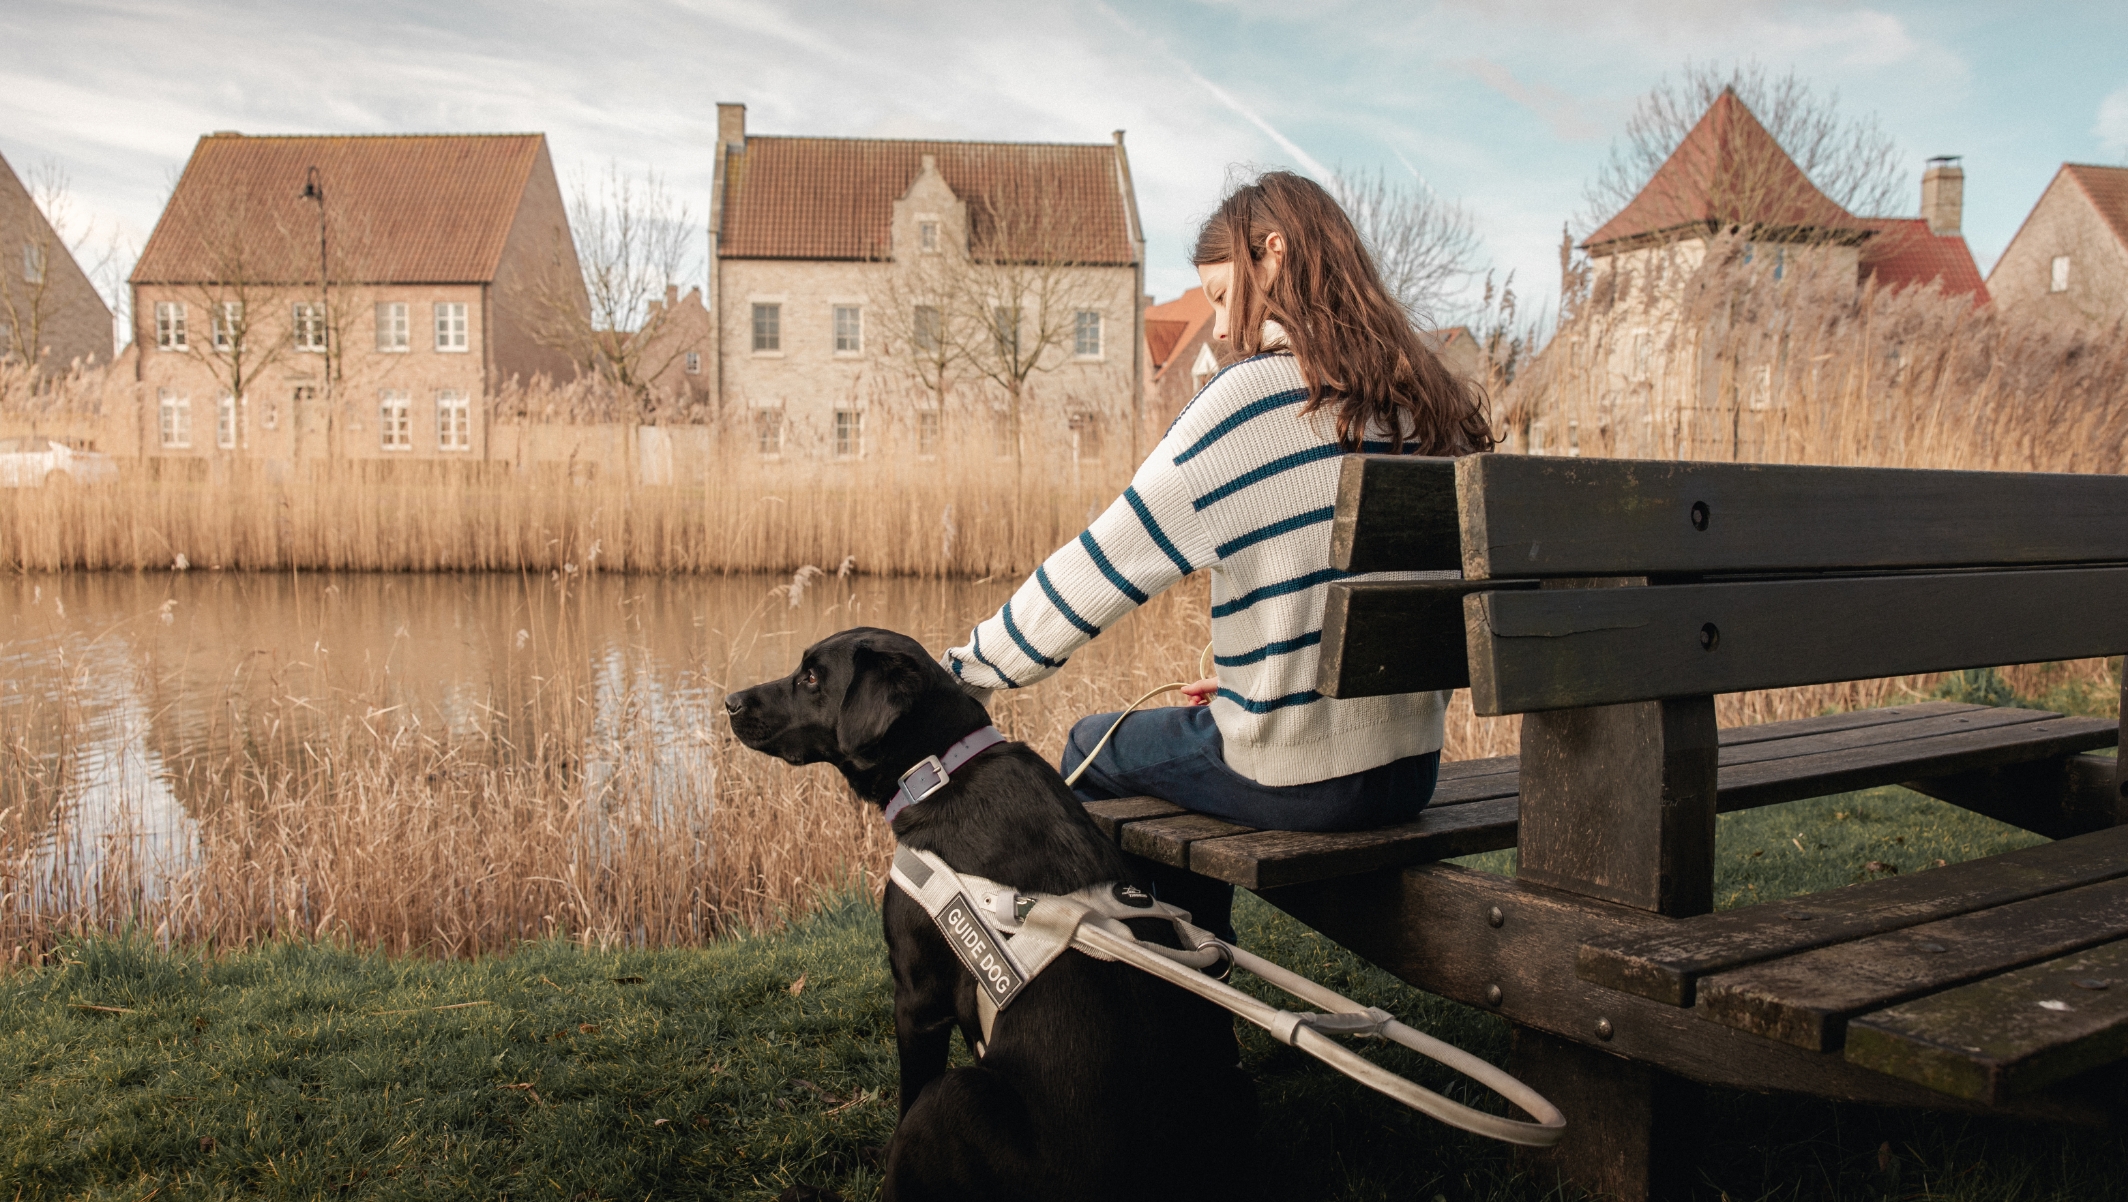 Afbeelding van een jong meisje dat op een houten bank zit naast haar blindengeleidehond. Ze bevinden zich voor een meer met hoge grassen en huizen op de achtergrond. Het meisje aait haar hond die een harnas draagt. We zien de rug van het meisje en de hond die genieten van het moment.